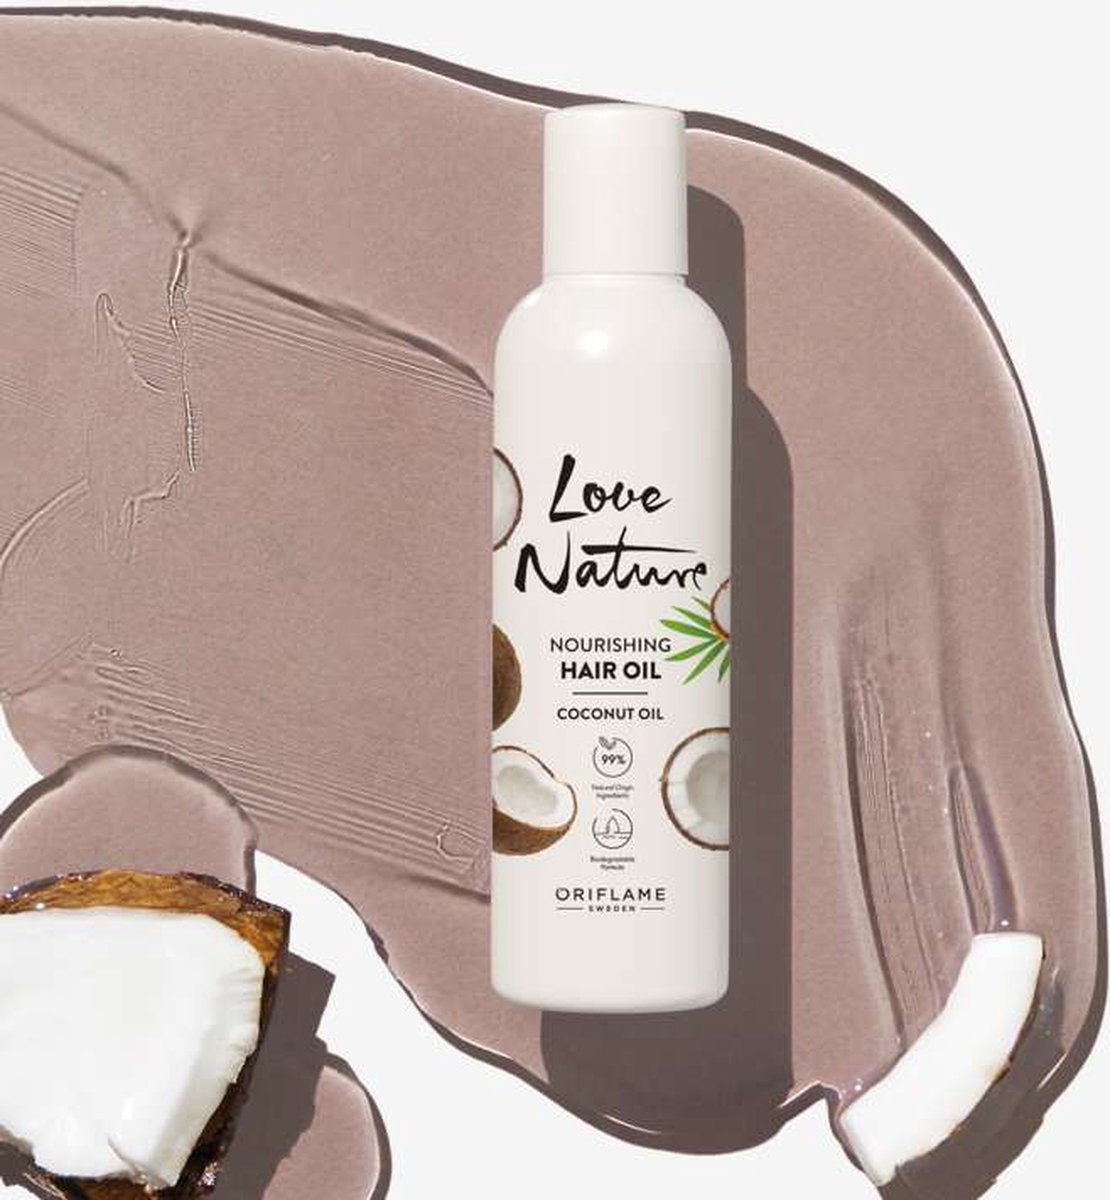 LOVE NATURE - Nourishing Hair Oil Coconut Oil